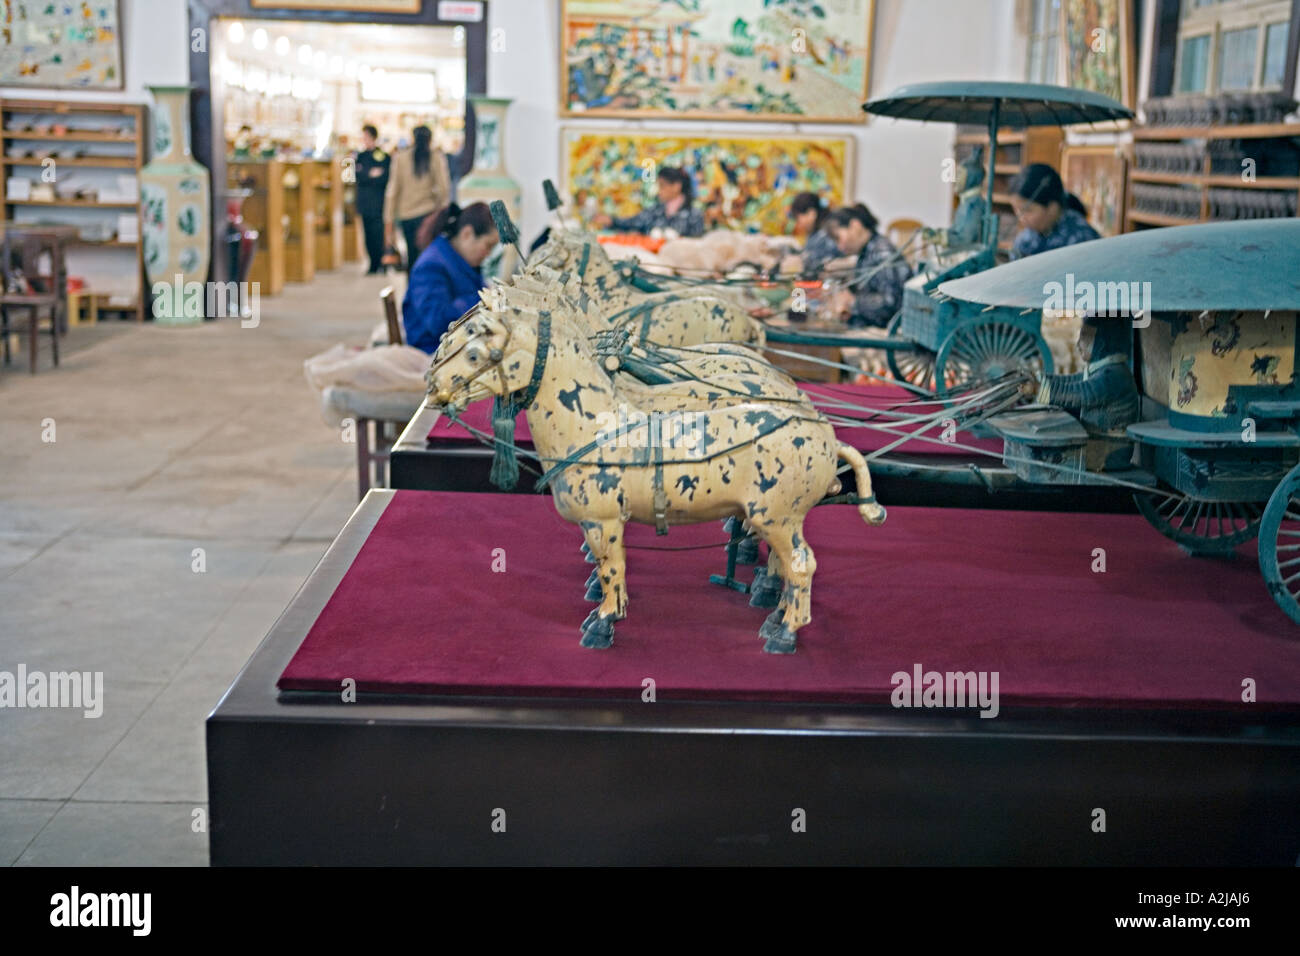 La CHINE XI'AN boutique de souvenirs et de vente d'usine des répliques de statues la trouvé sur le site de l'armée de guerriers de terre cuite Banque D'Images